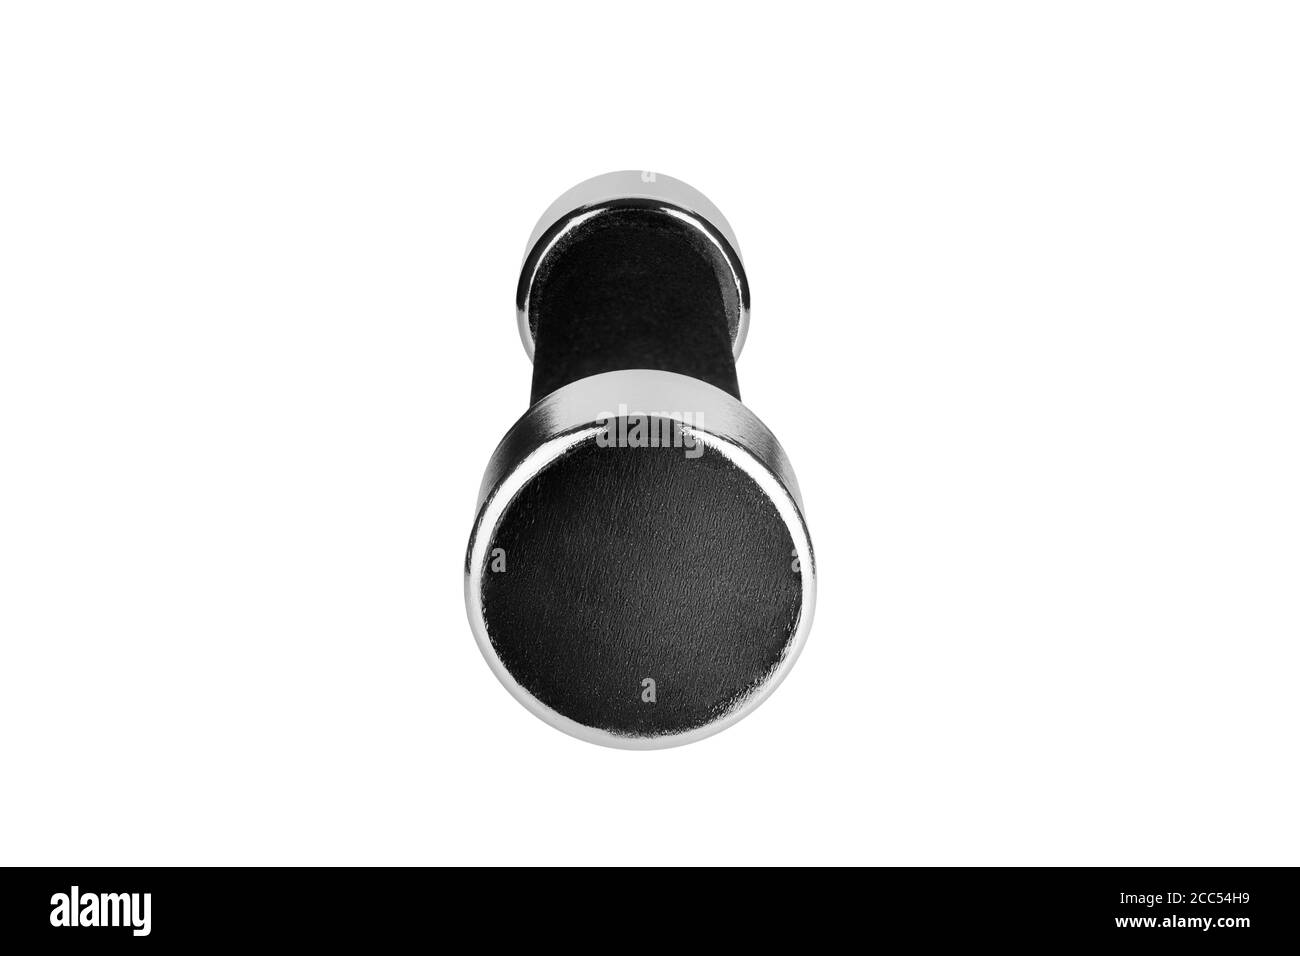 Une haltère sur fond blanc isolée de près, une barbell en métal simple avec poignée noire, style bar-sonnette de fitness, équipement de sport de levage Banque D'Images